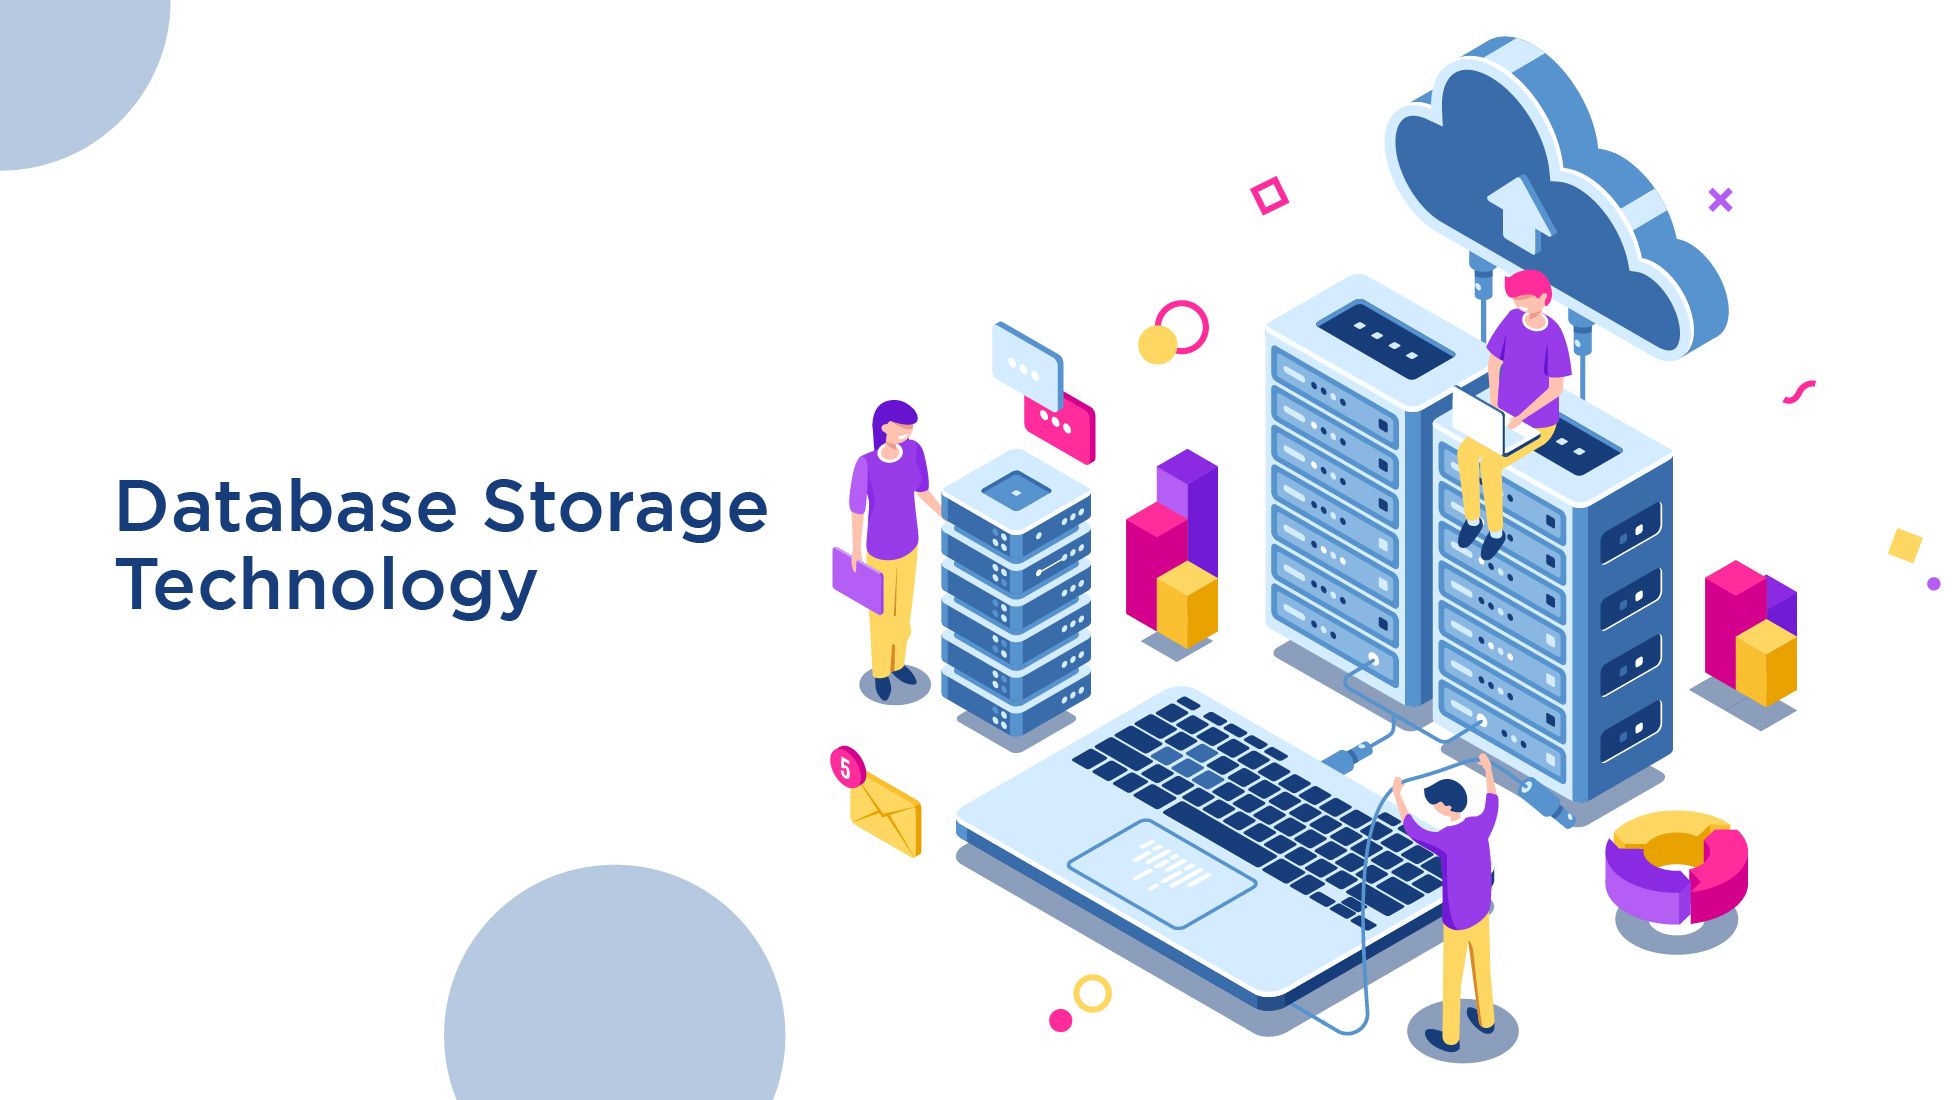 Database Storage Technology